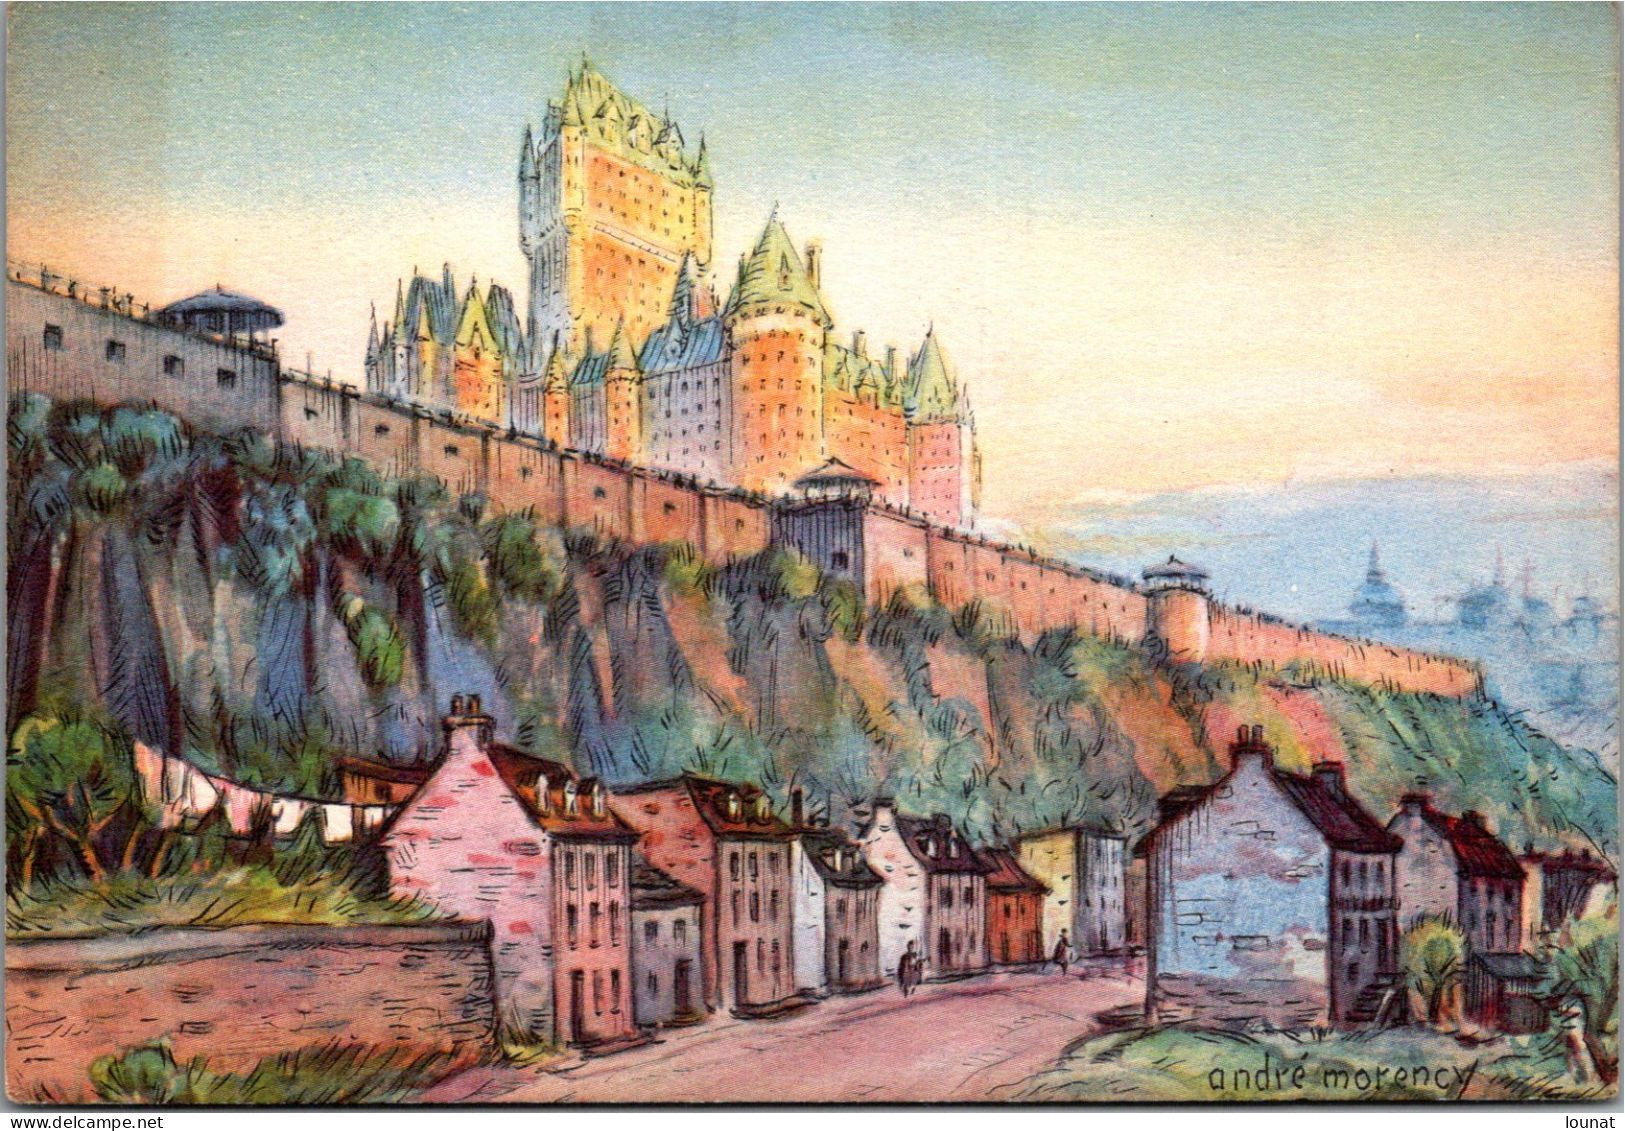 Amérique - Canada - Québec - Le Chateau Frontenac - Illustrateur André Morency - Québec - Château Frontenac